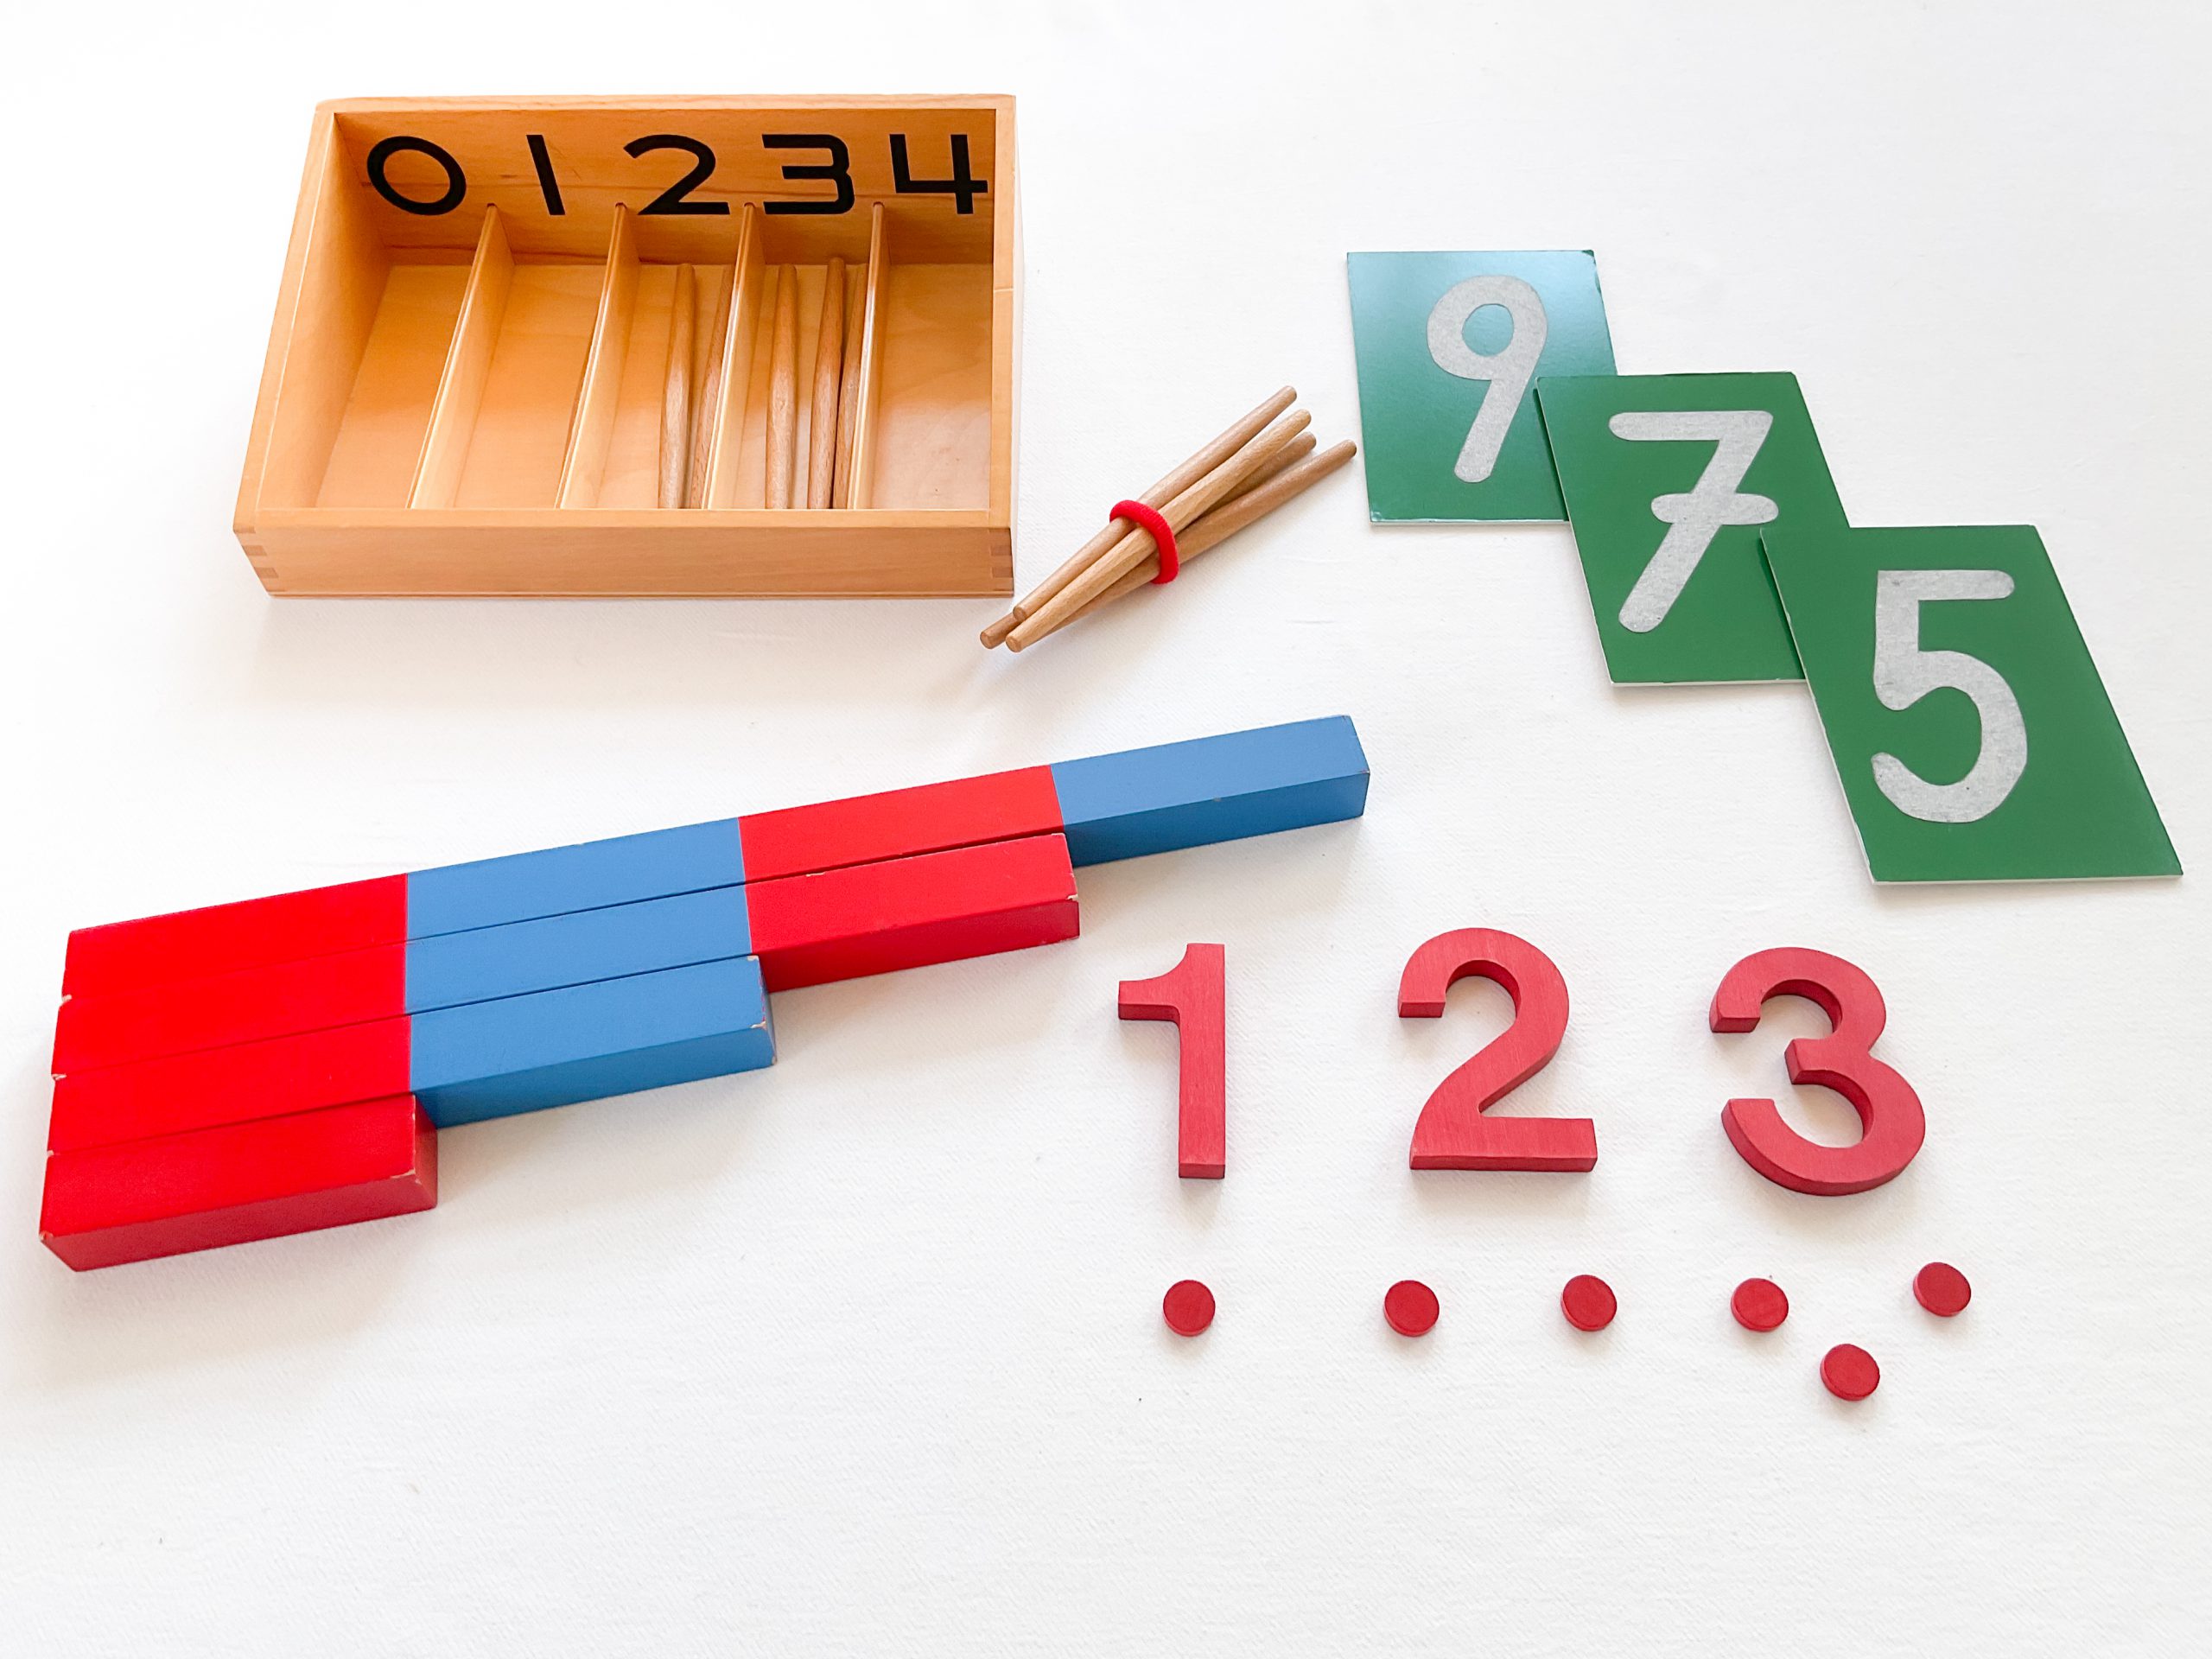 Montessori Material Darbietungen Mathematik scaled